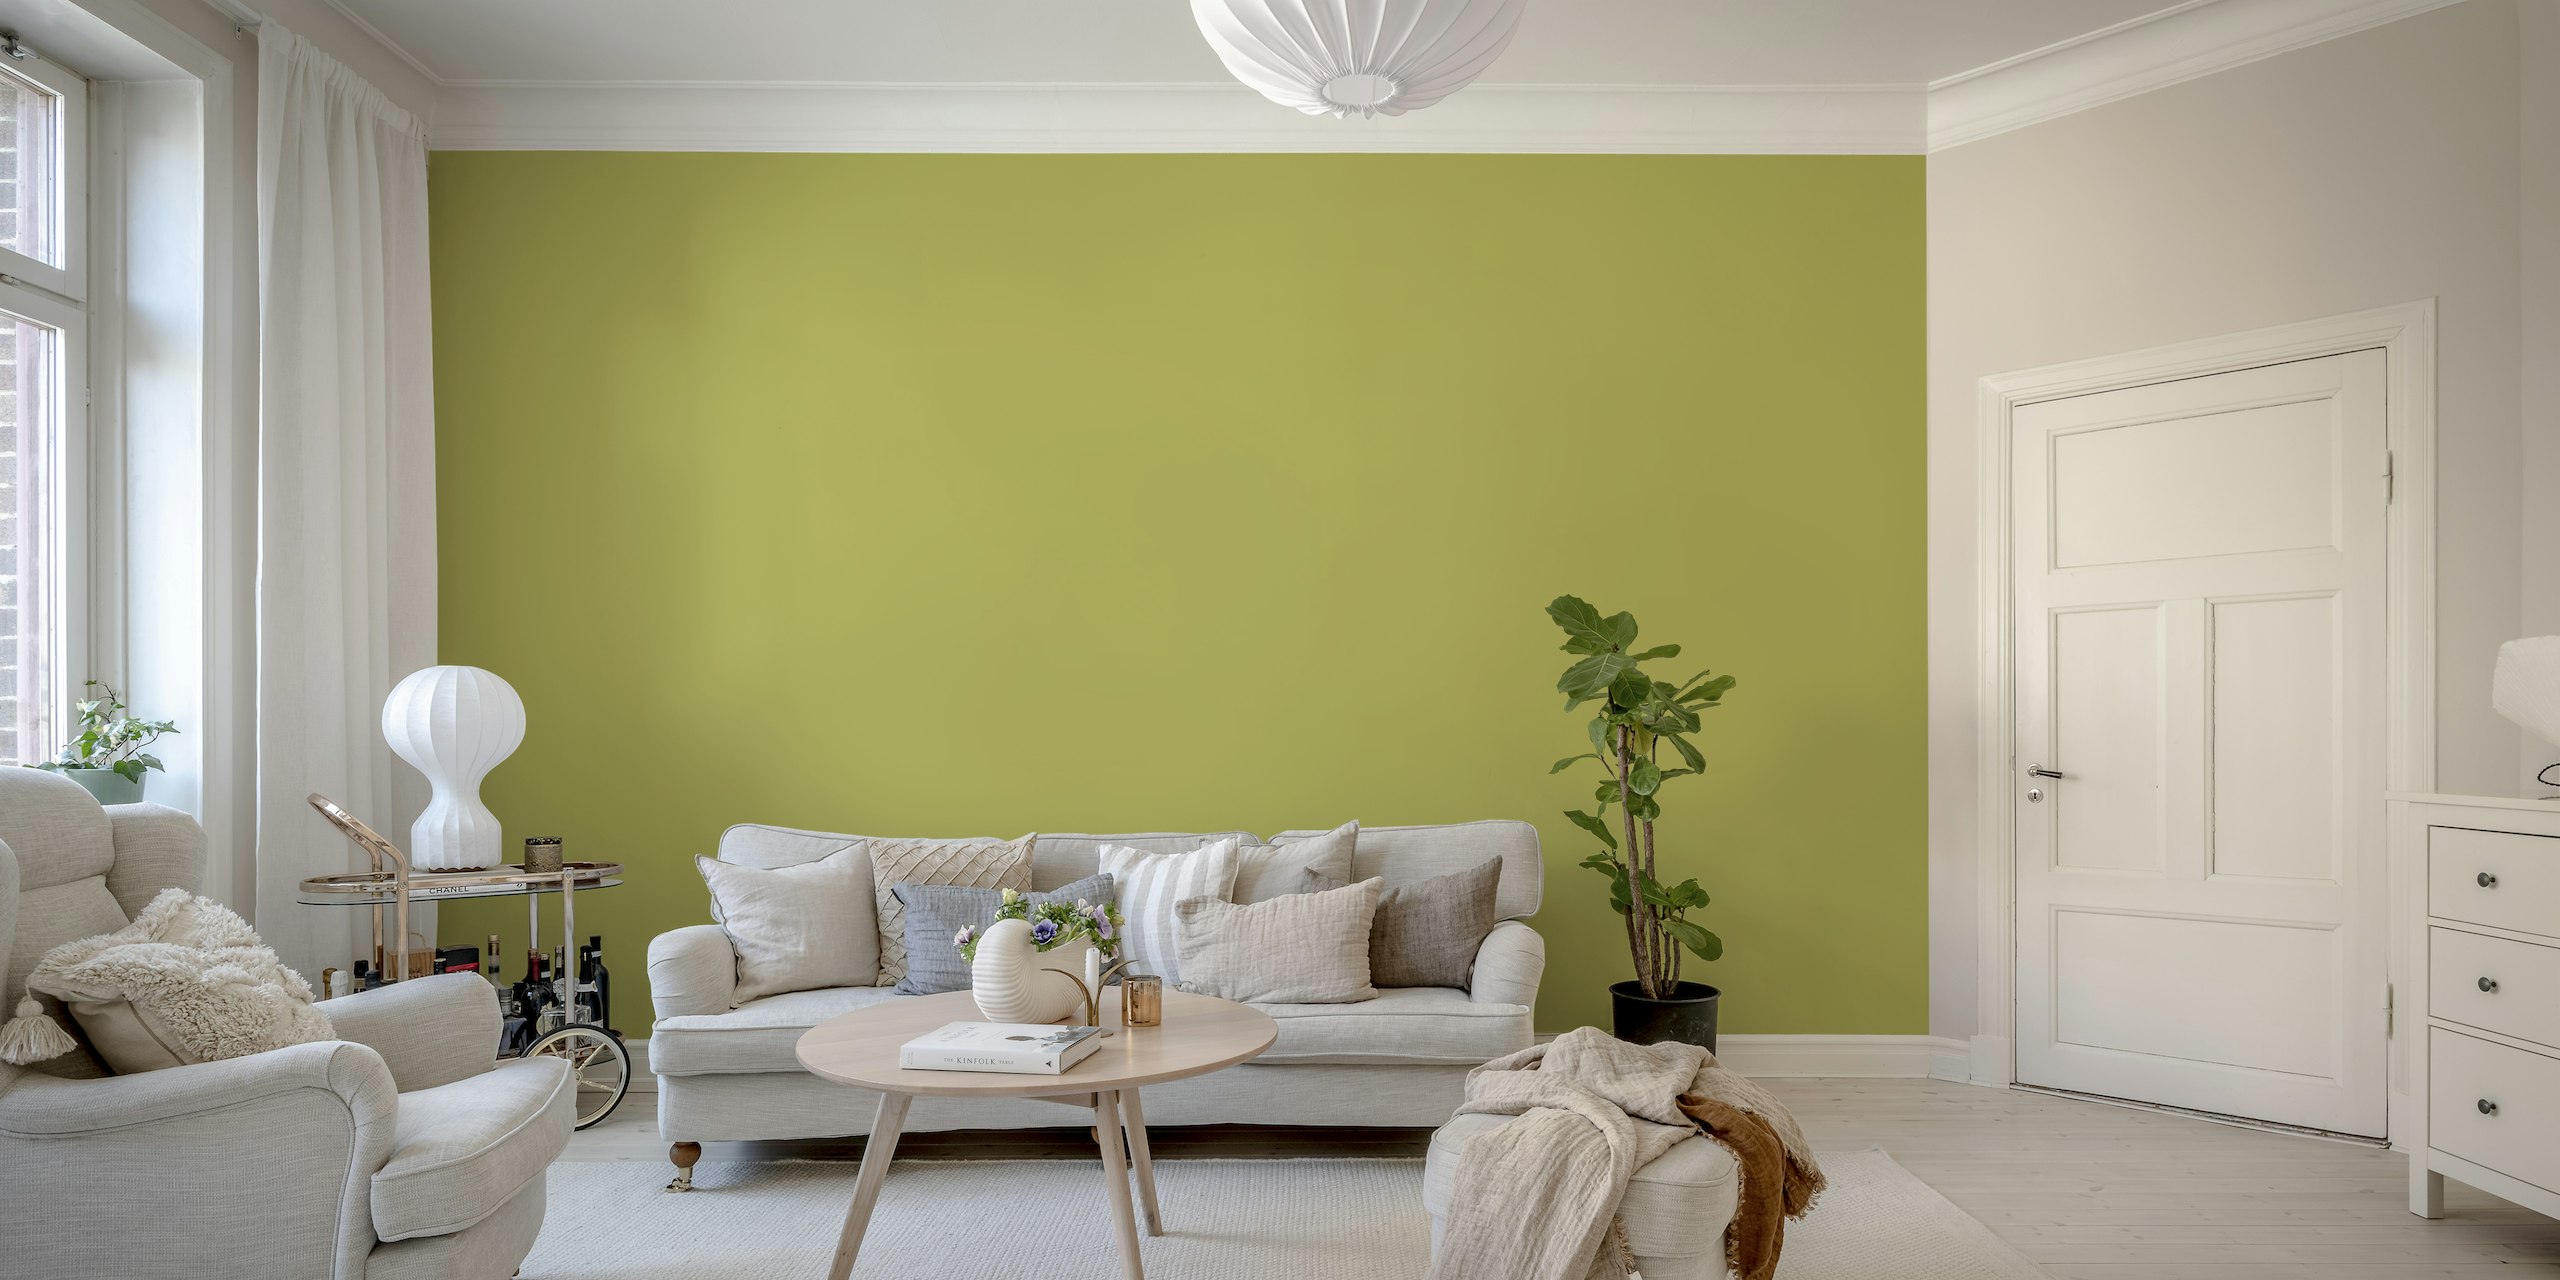 Olivengrøn ensfarvet vægmaleri, der udstråler en rolig og sofistikeret stemning.